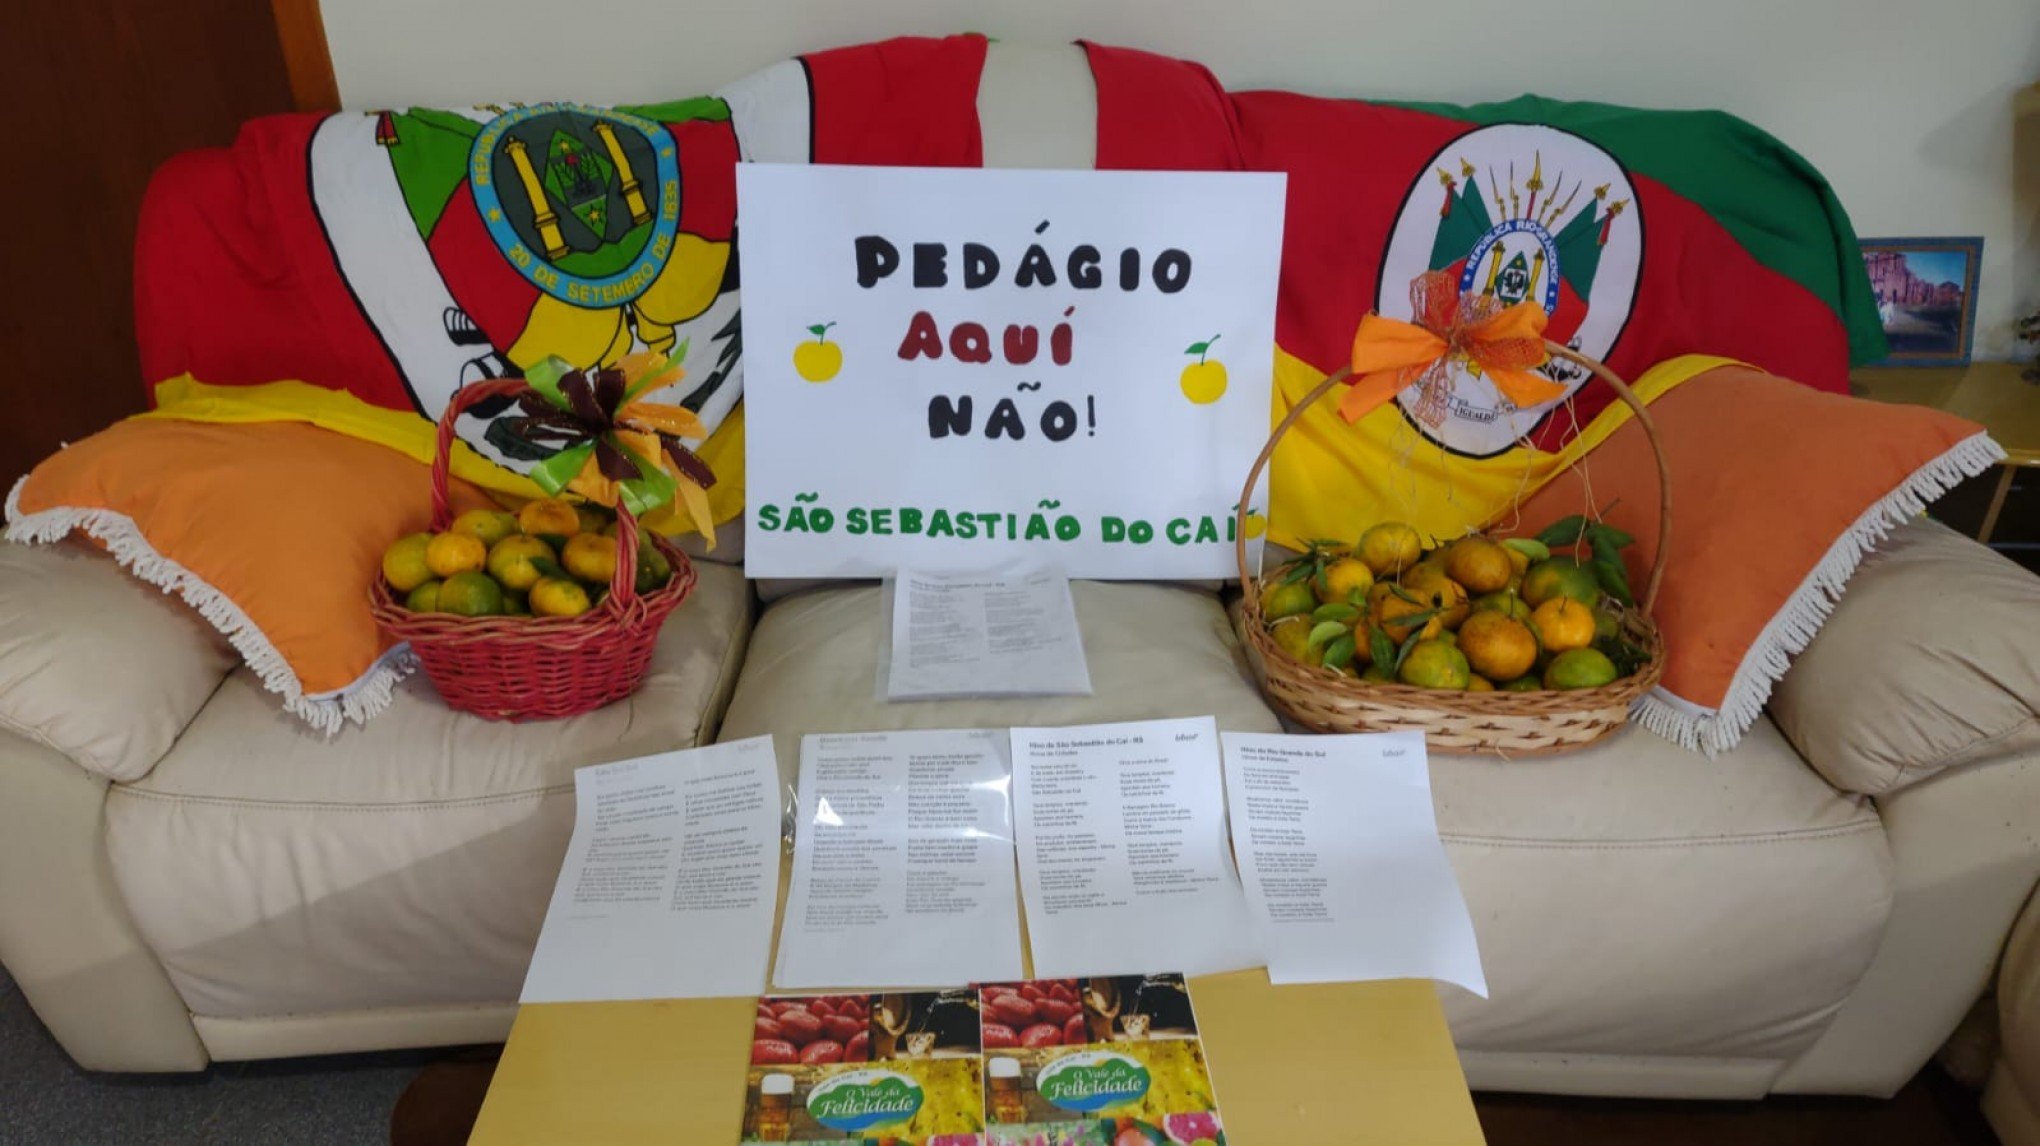 Moradores de São Sebastião do Caí vão até Porto Alegre para manifestar contra pedágio